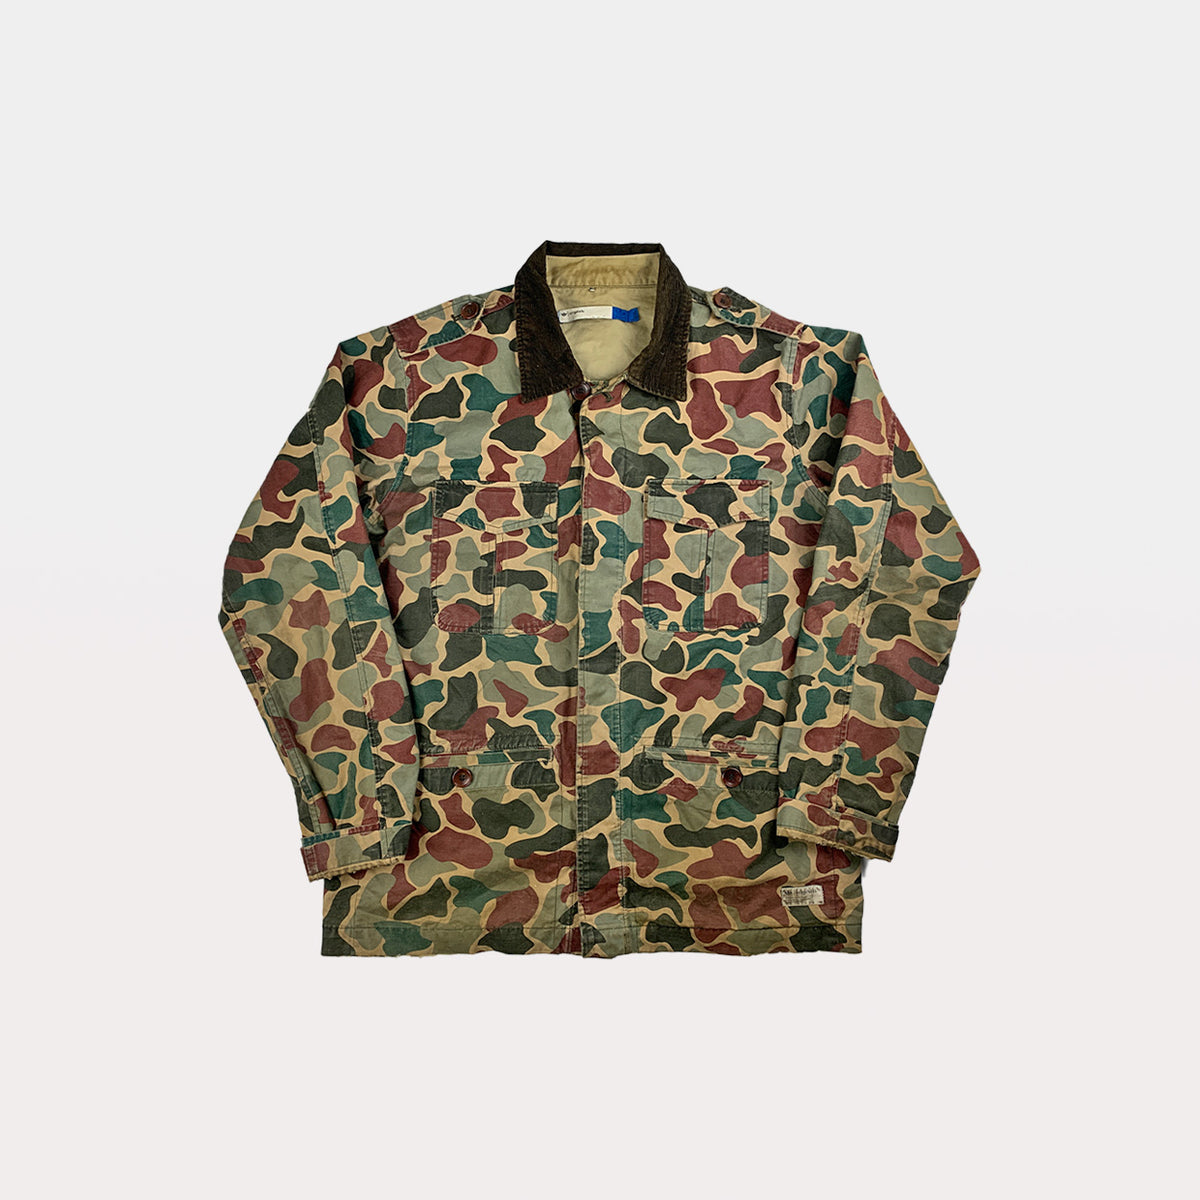 adidas army jacket